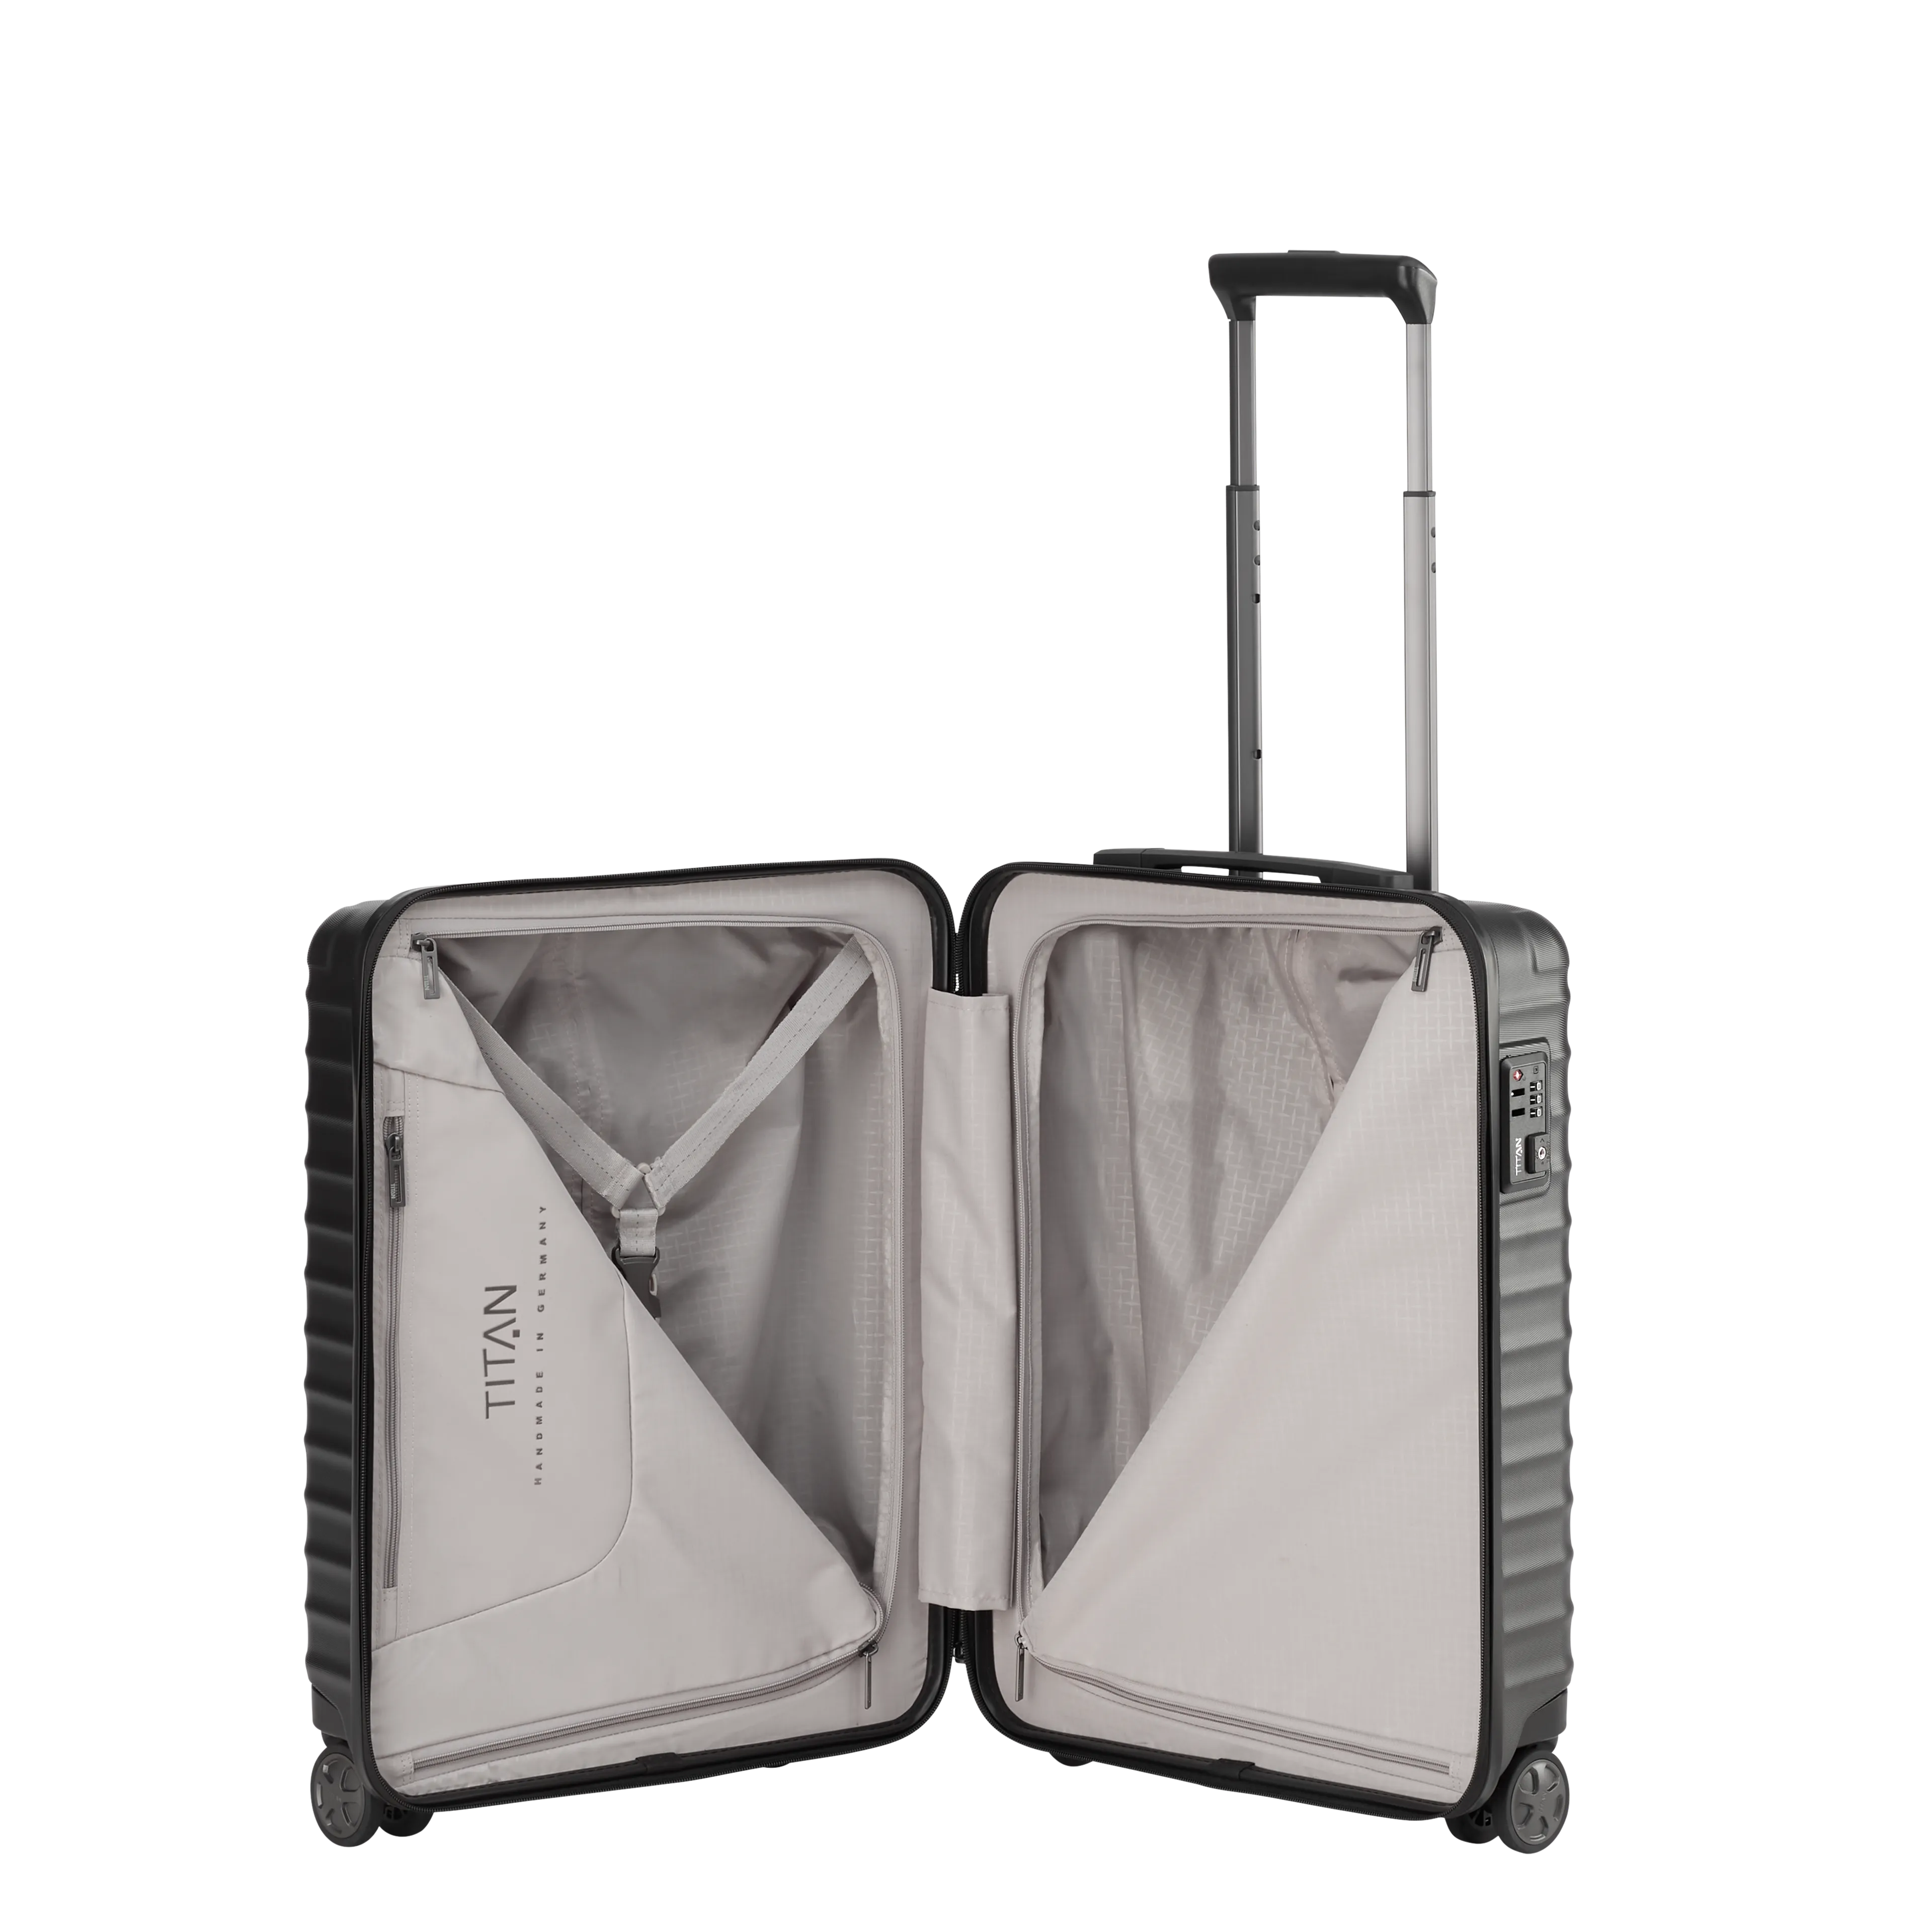 Ein TITAN Koffer der Serie LITRON Innenansicht in schwarz Größe S 55cm